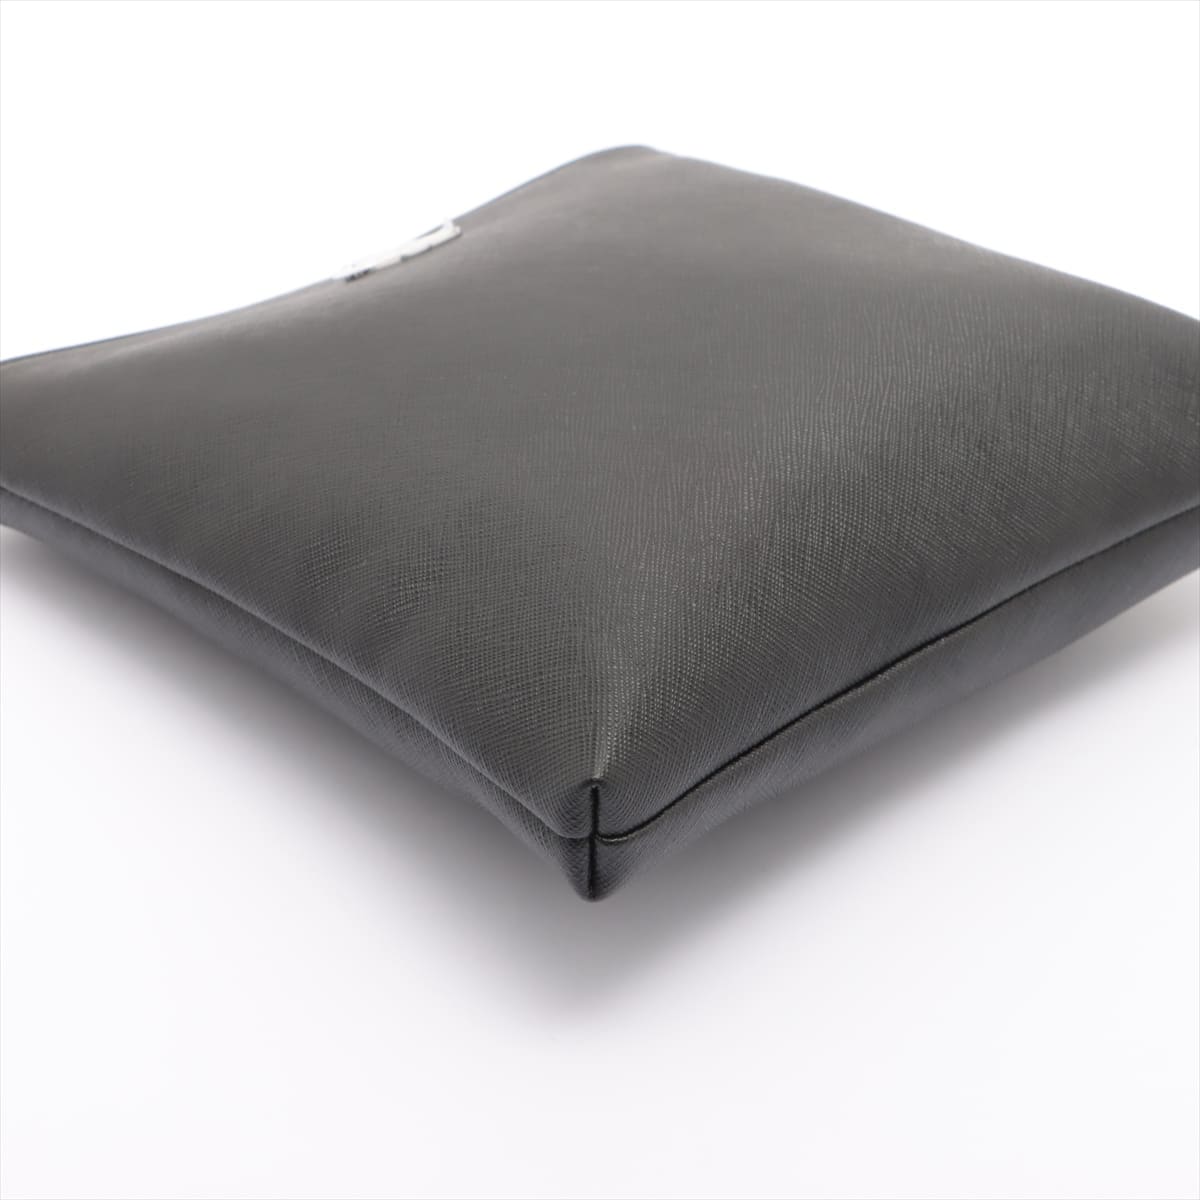 Vivienne Westwood Leather Shoulder bag Black